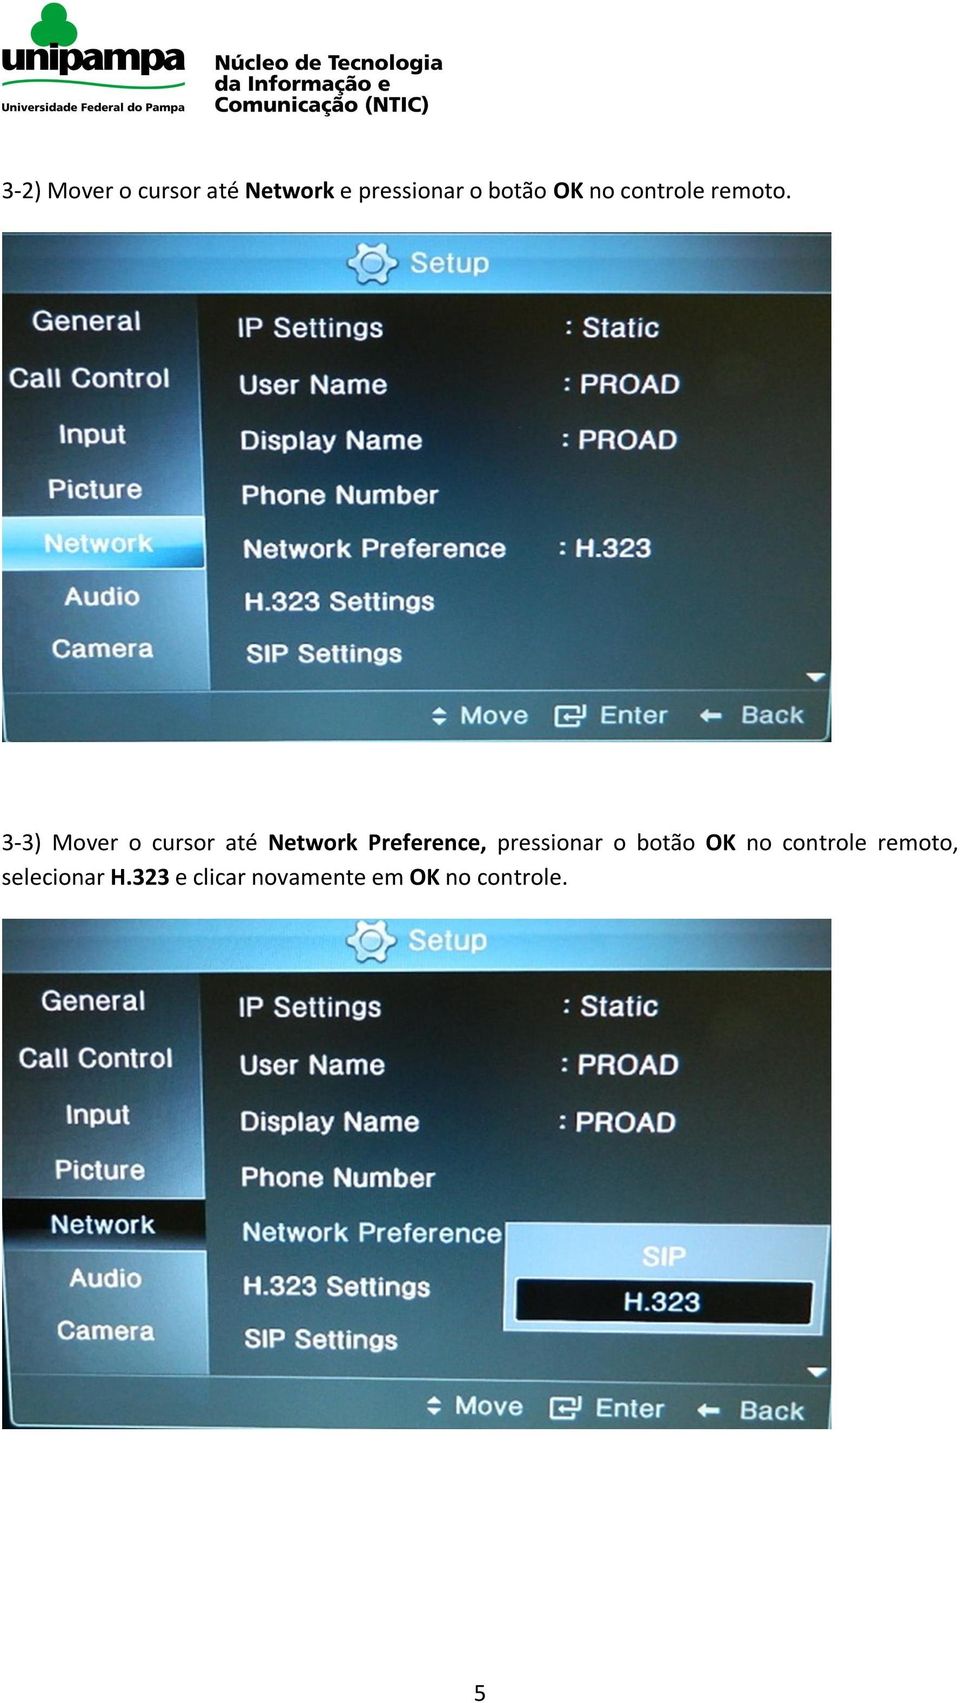 3-3) Mover o cursor até Network Preference, pressionar